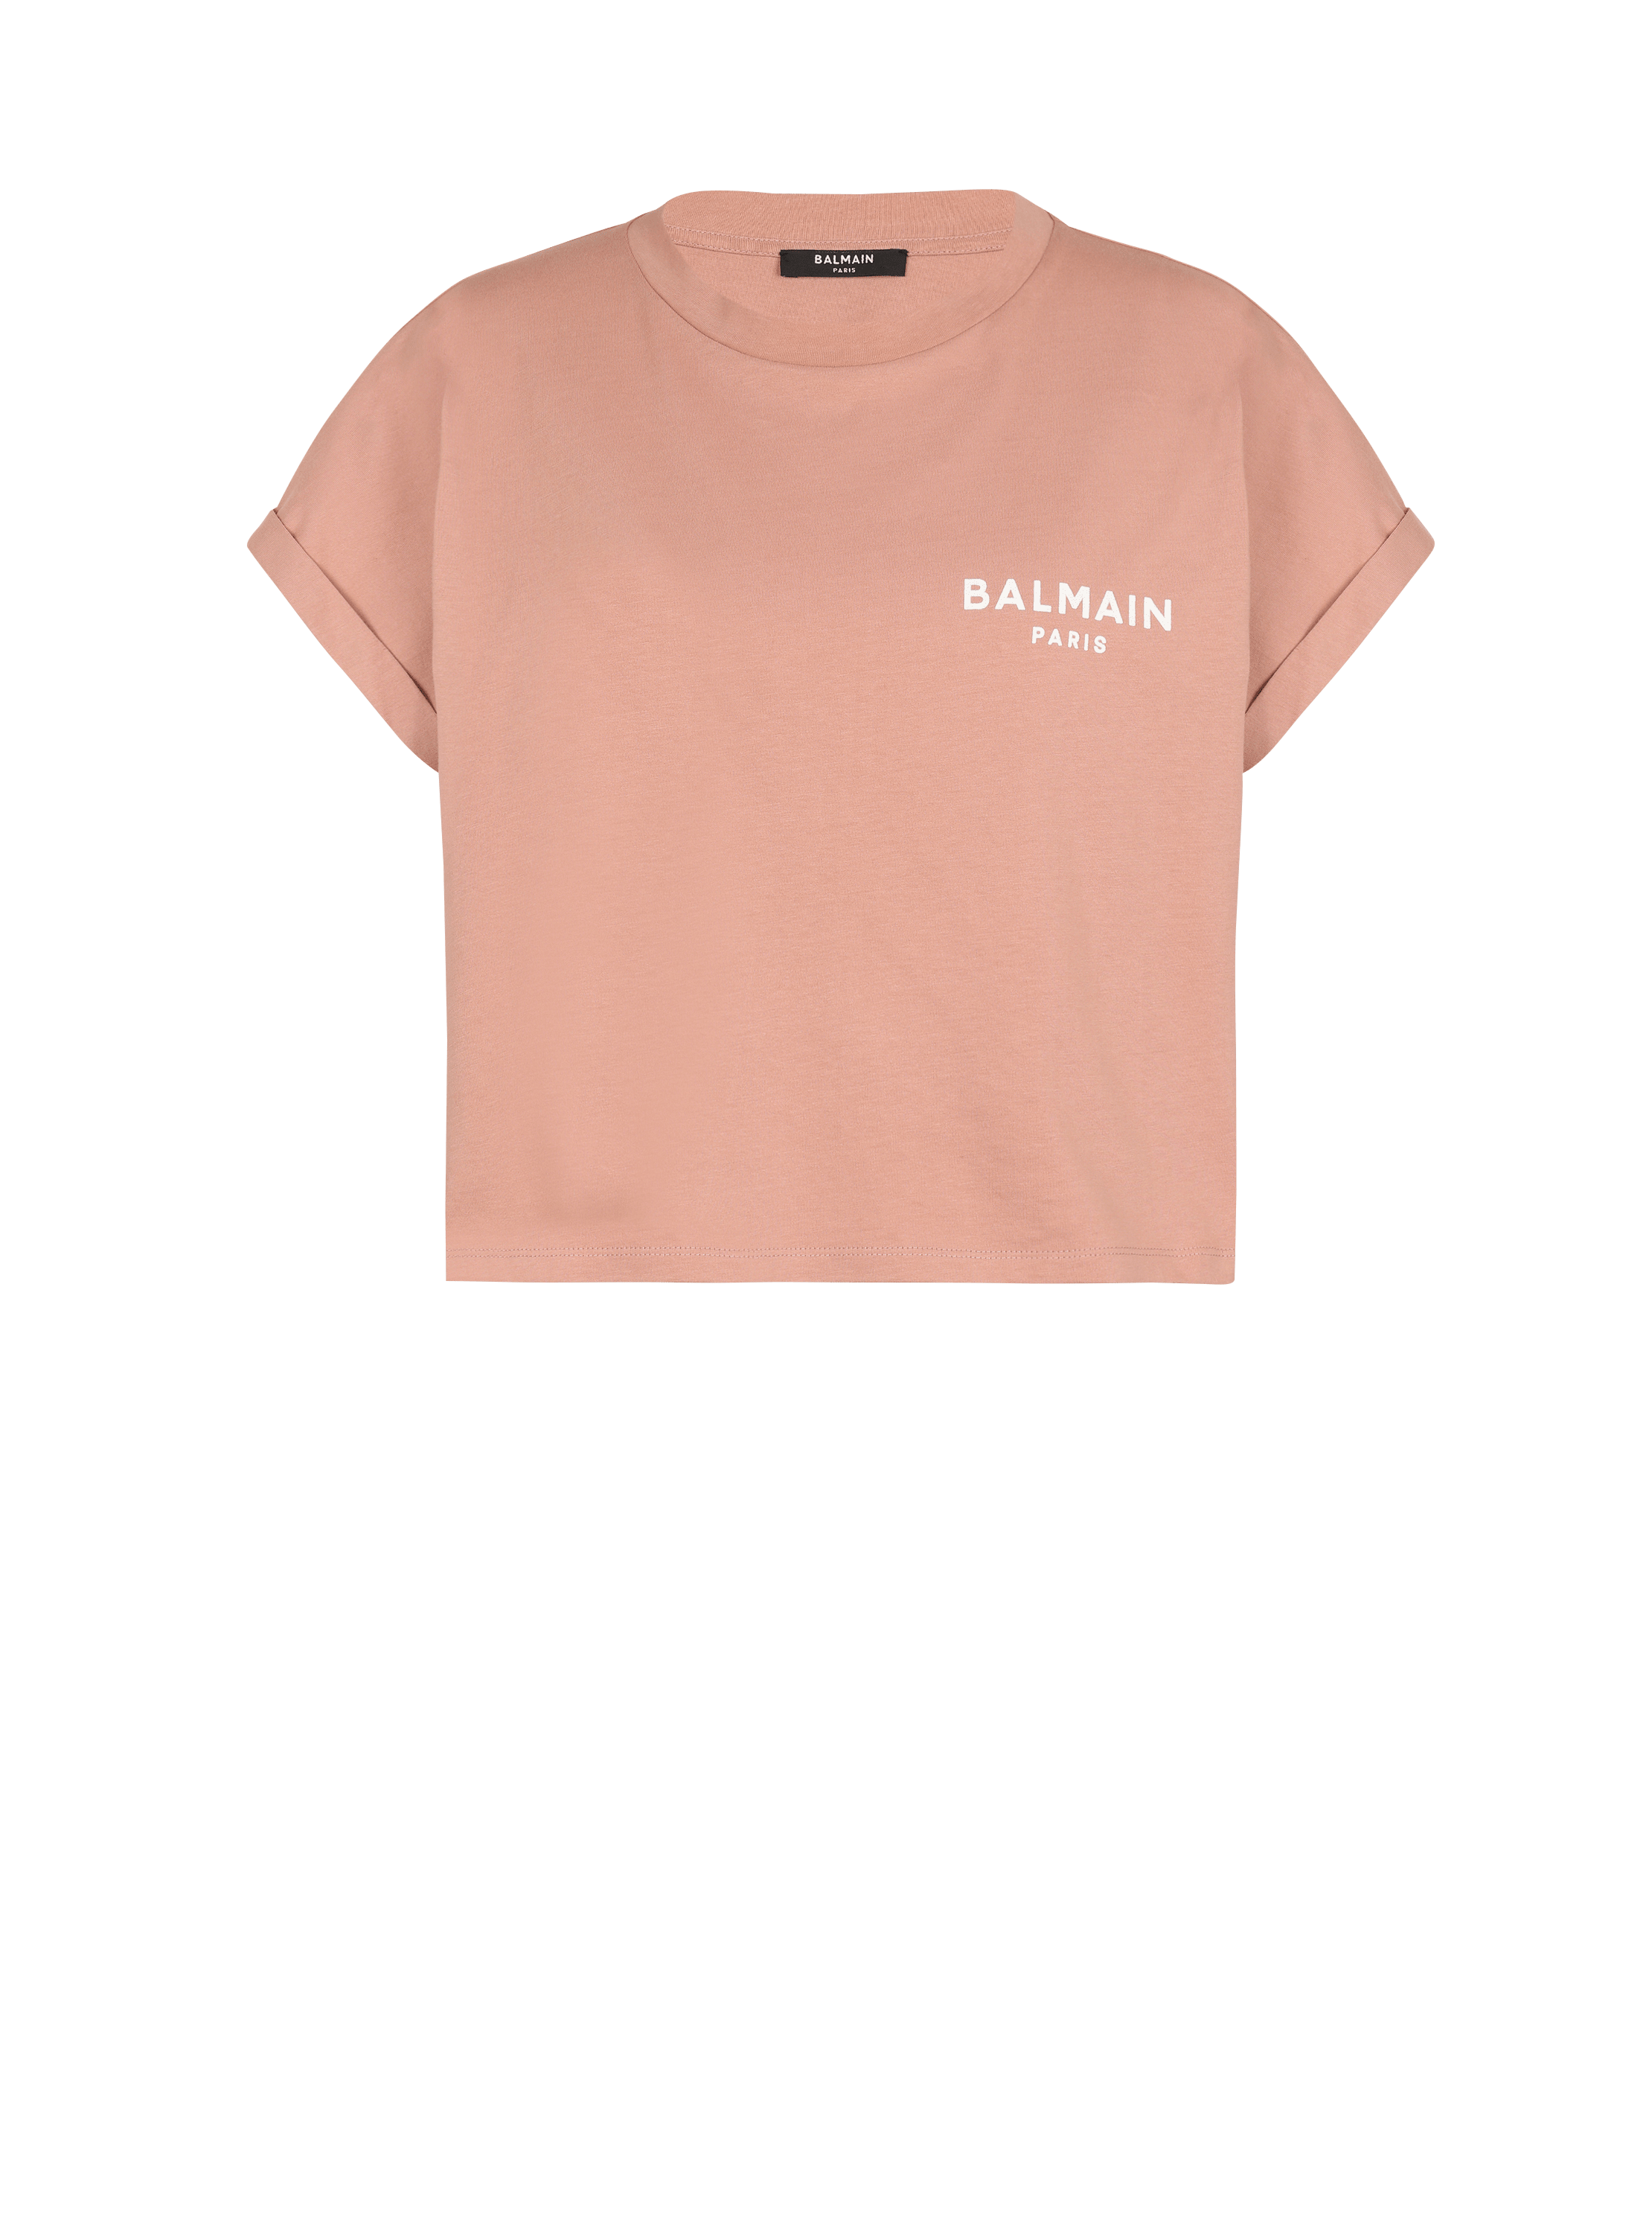 T-shirt court en coton éco-responsable imprimé logo Balmain, rose, hi-res